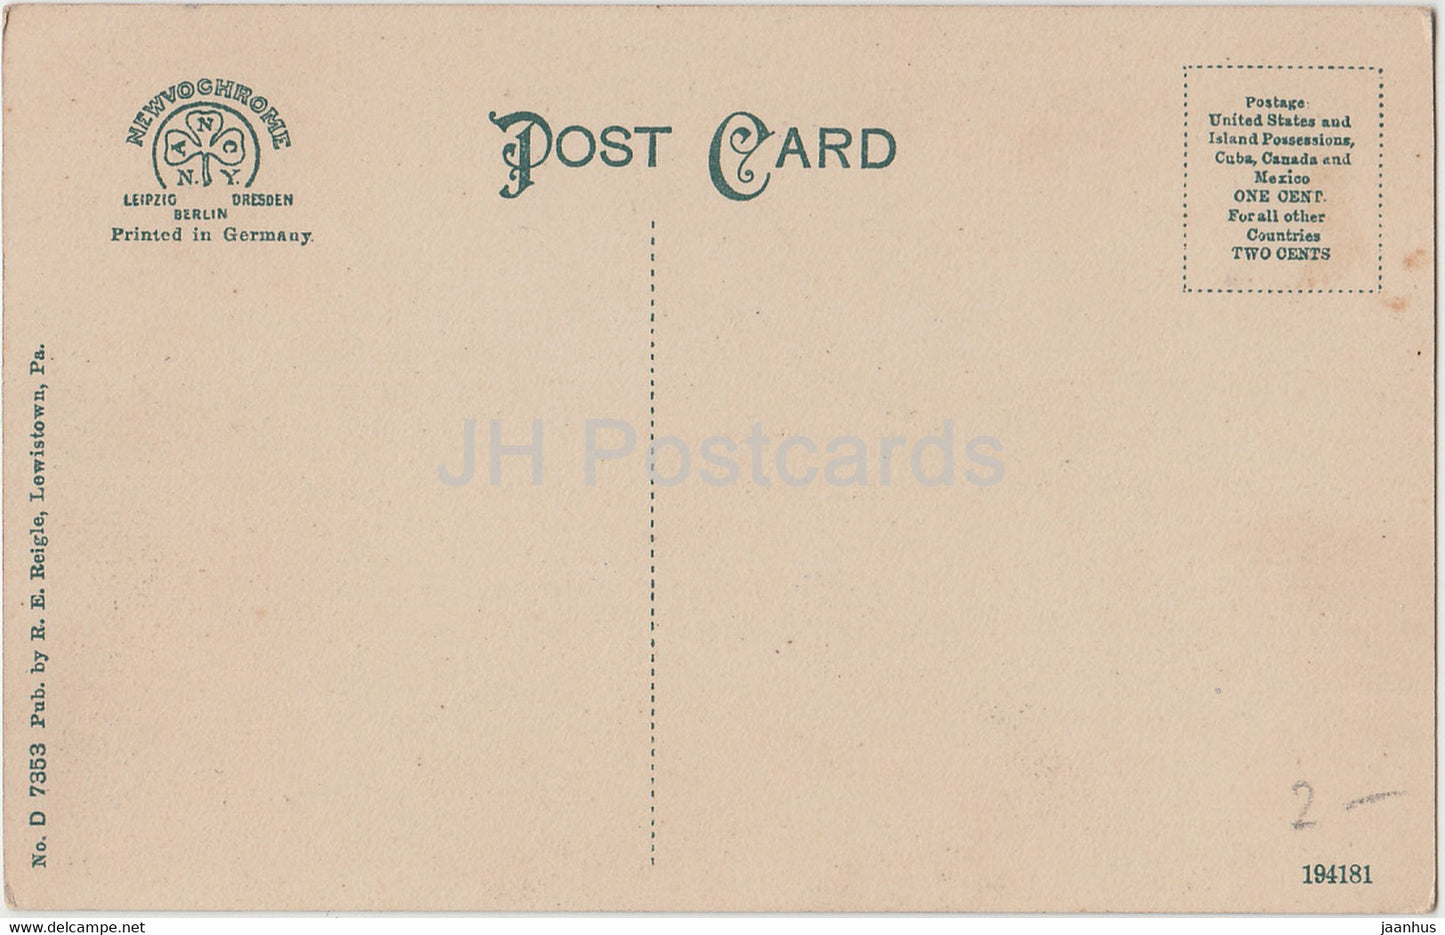 Lewistown - Moonlight on Jacks Creek - PA - 7353 - old postcard - United States - USA - unused